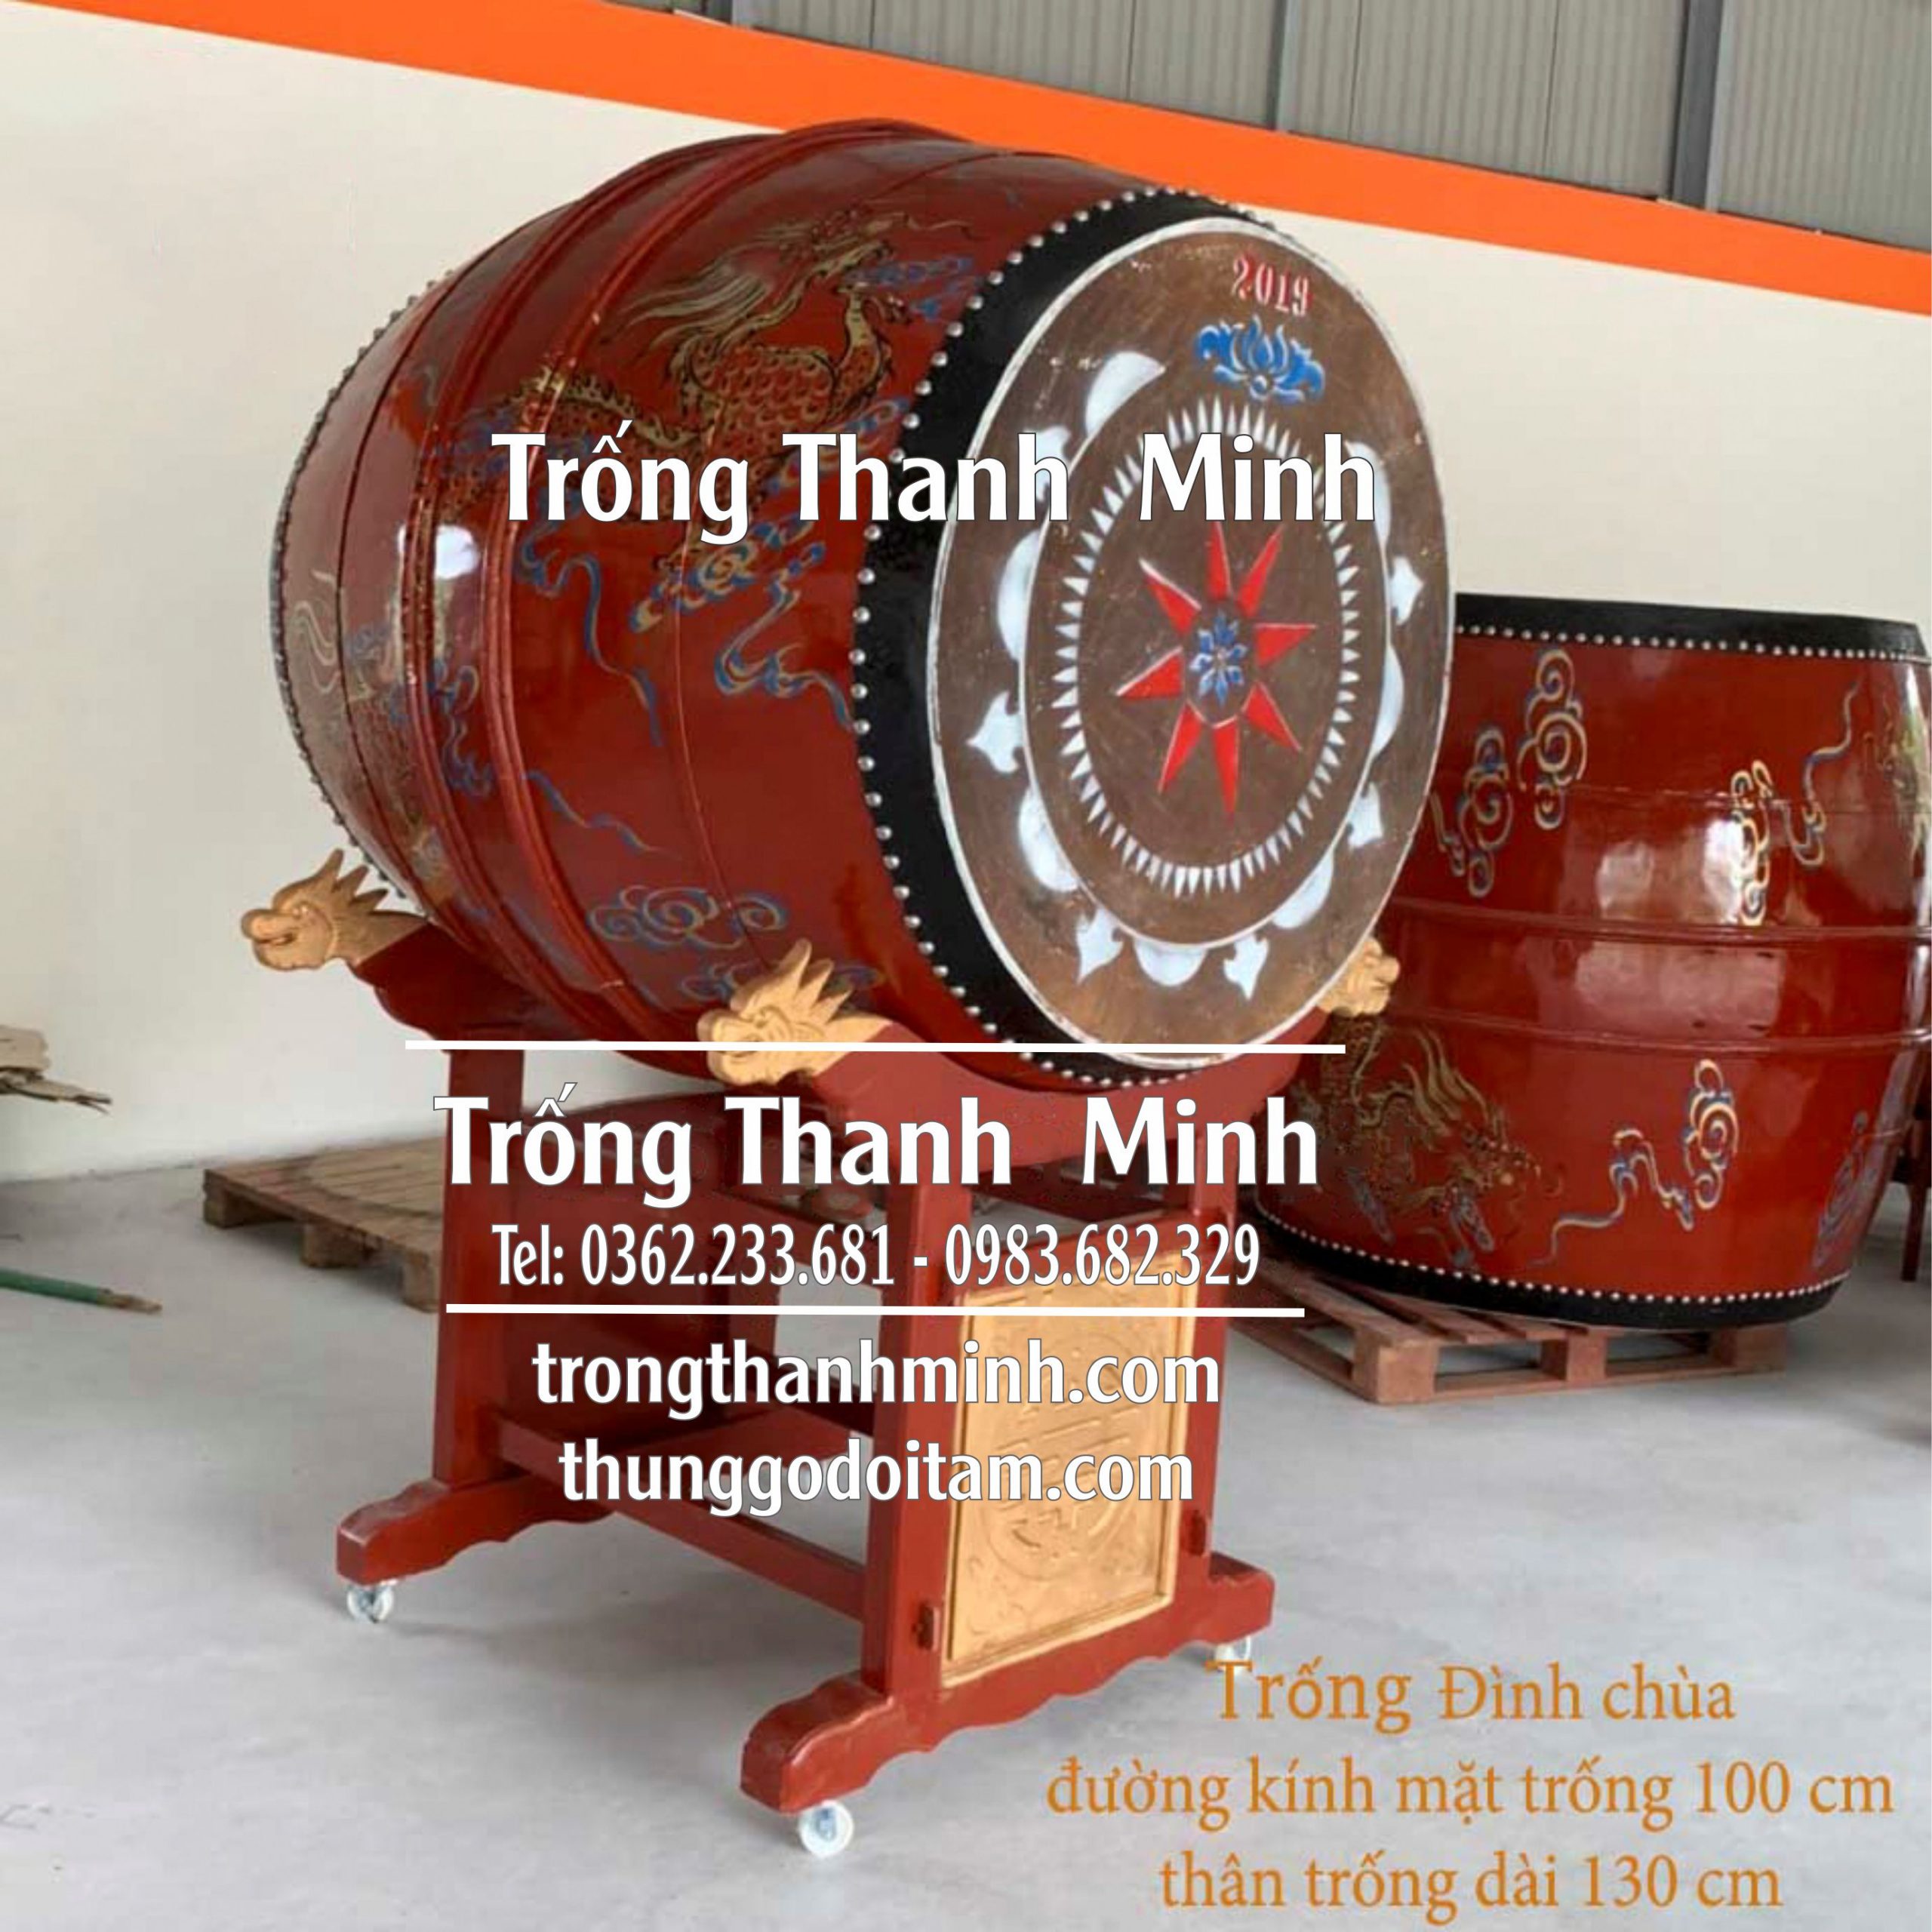 Xưởng sản xuất Trống Chùa - Trống Thanh Minh kích thước mặt trống 100cm cao 130cm